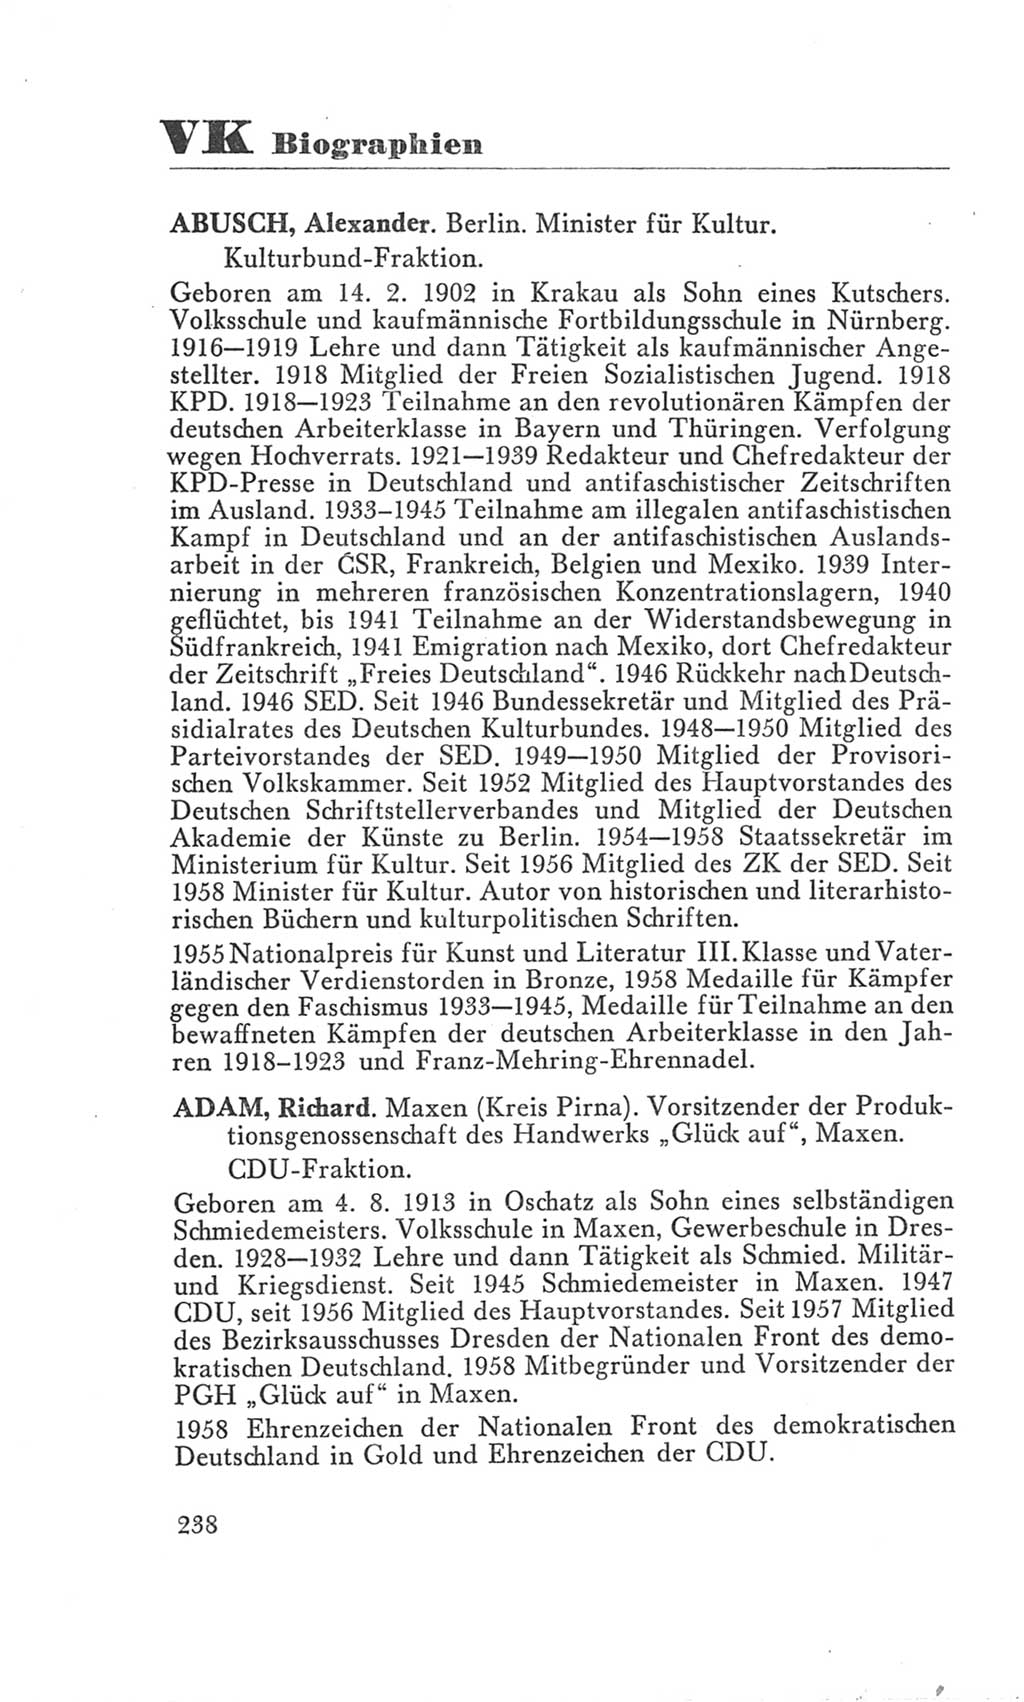 Handbuch der Volkskammer (VK) der Deutschen Demokratischen Republik (DDR), 3. Wahlperiode 1958-1963, Seite 238 (Hdb. VK. DDR 3. WP. 1958-1963, S. 238)